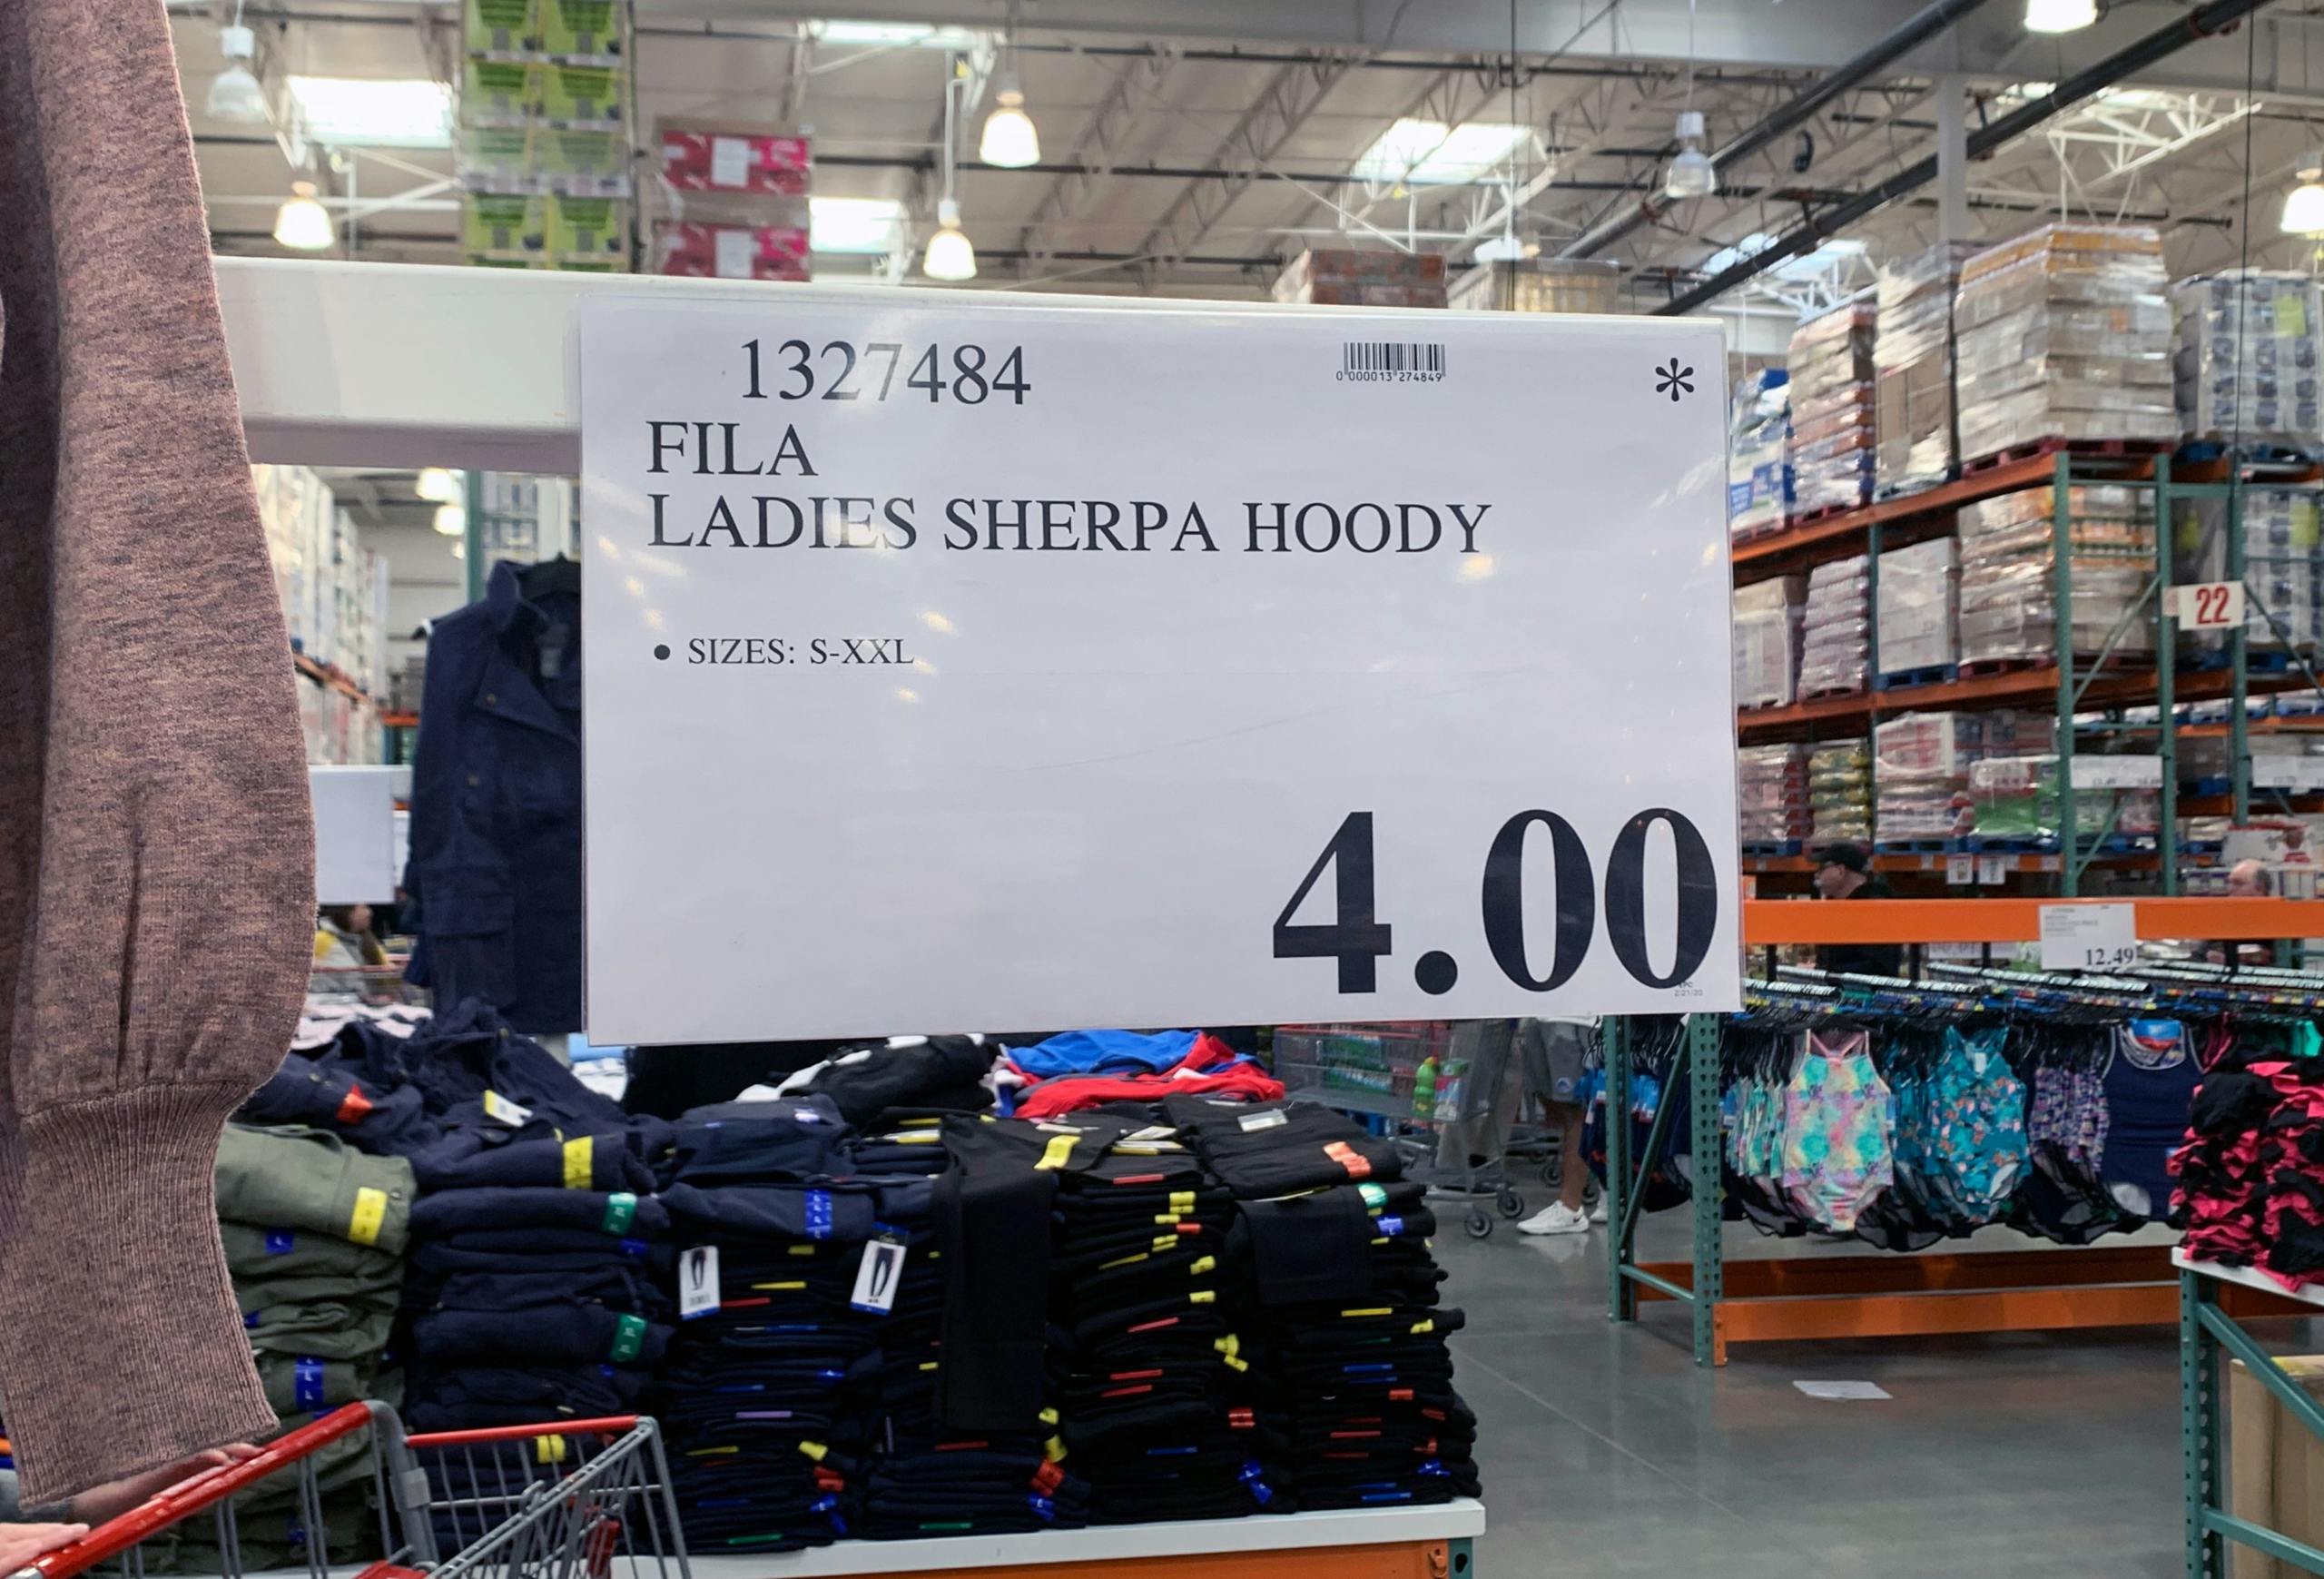 FILA Ladies' Sherpa Hoodie, Only $4 at 